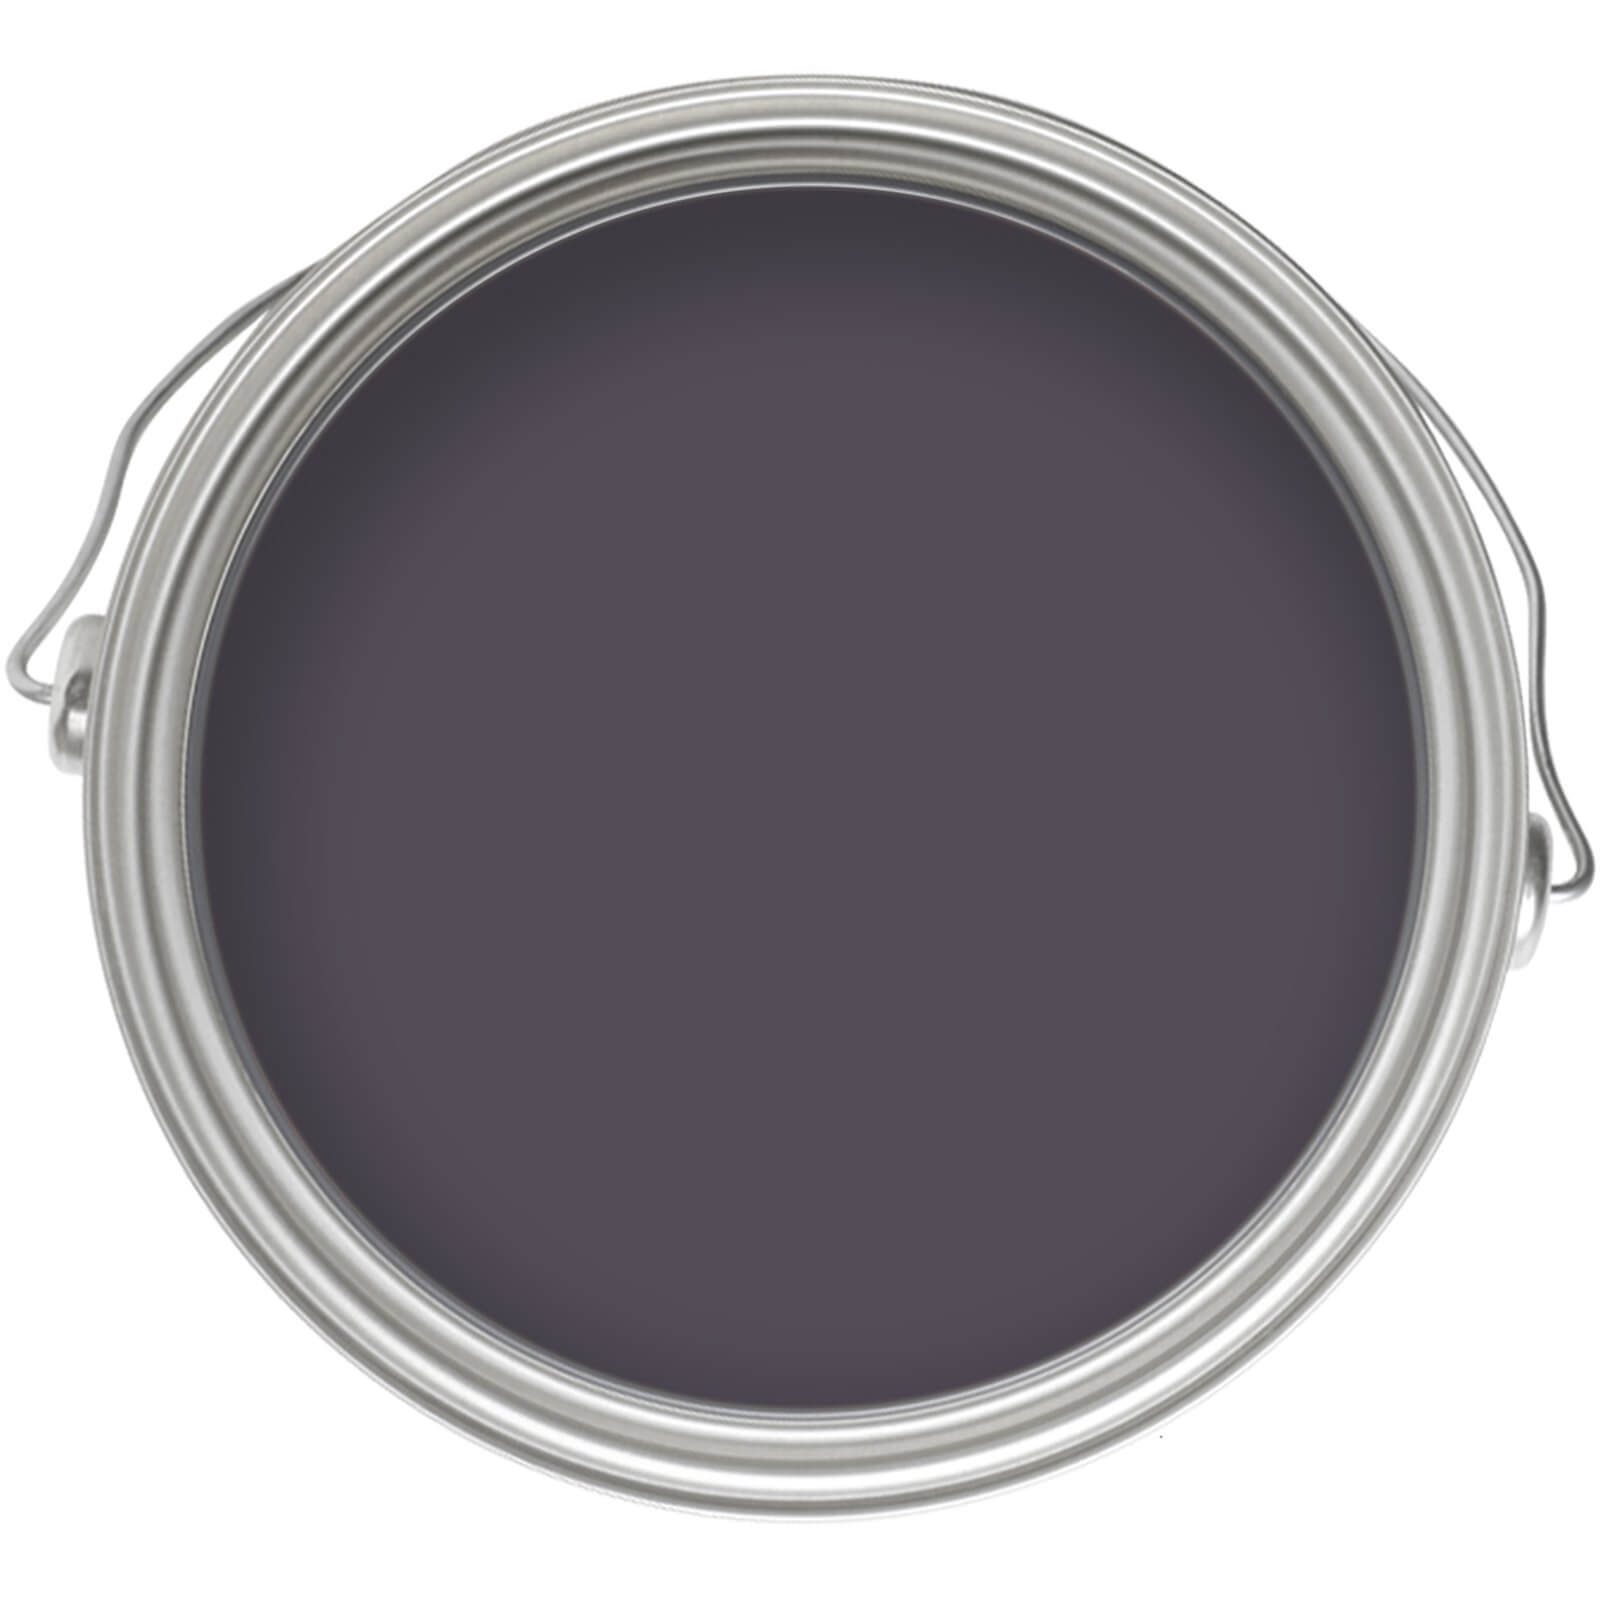 Homebase Silk Emulsion Paint Mulberry Crush - 5L